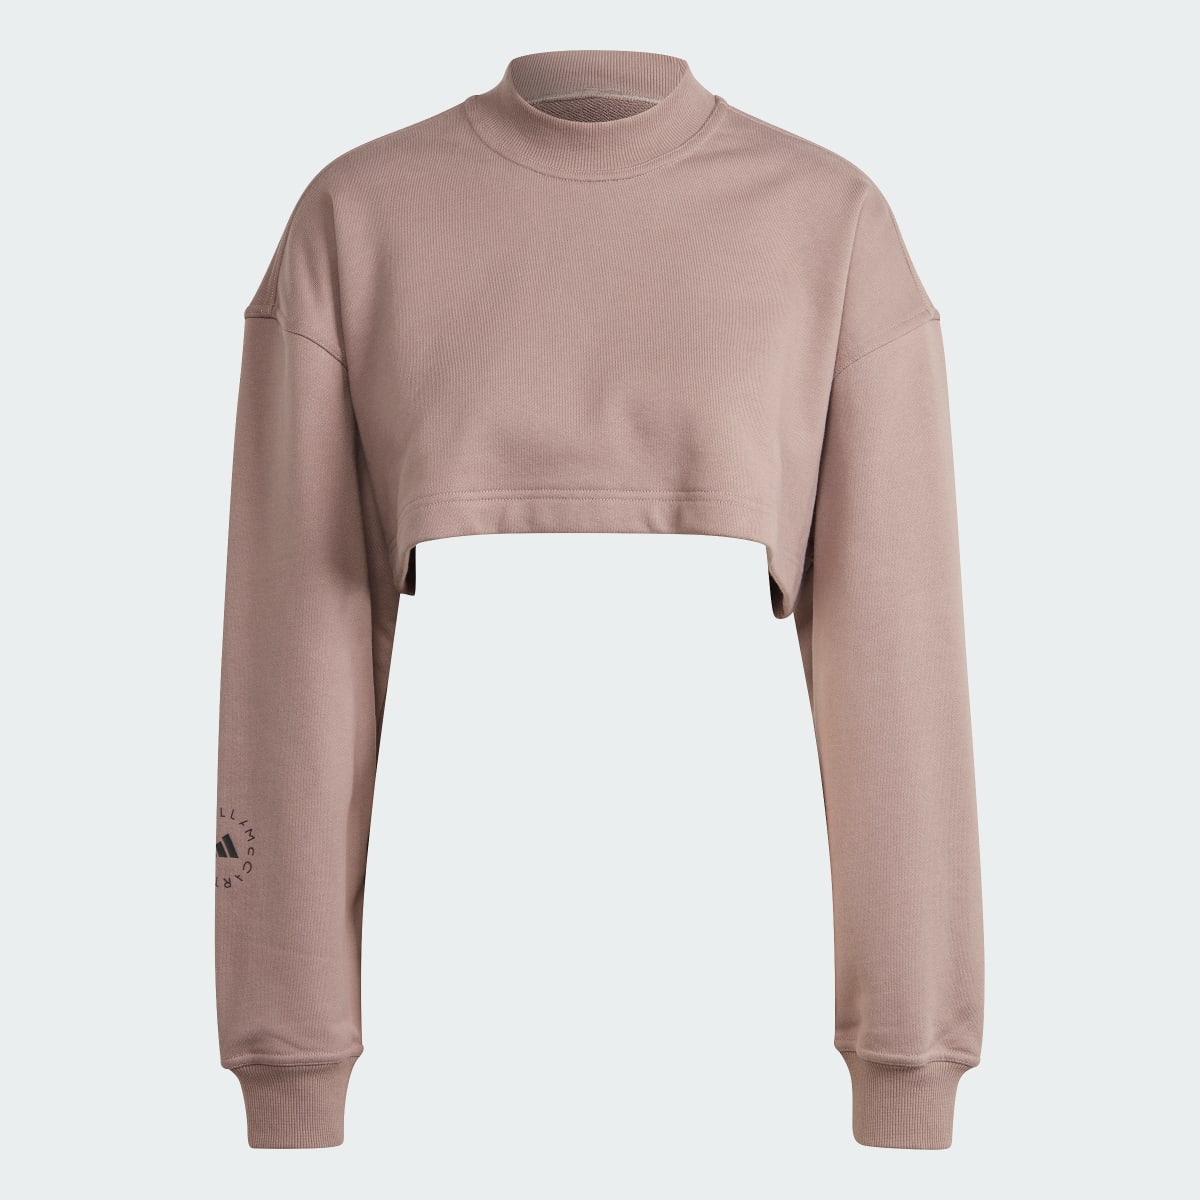 Adidas by Stella McCartney TrueCasuals Cropped Sportswear Sweatshirt. 5